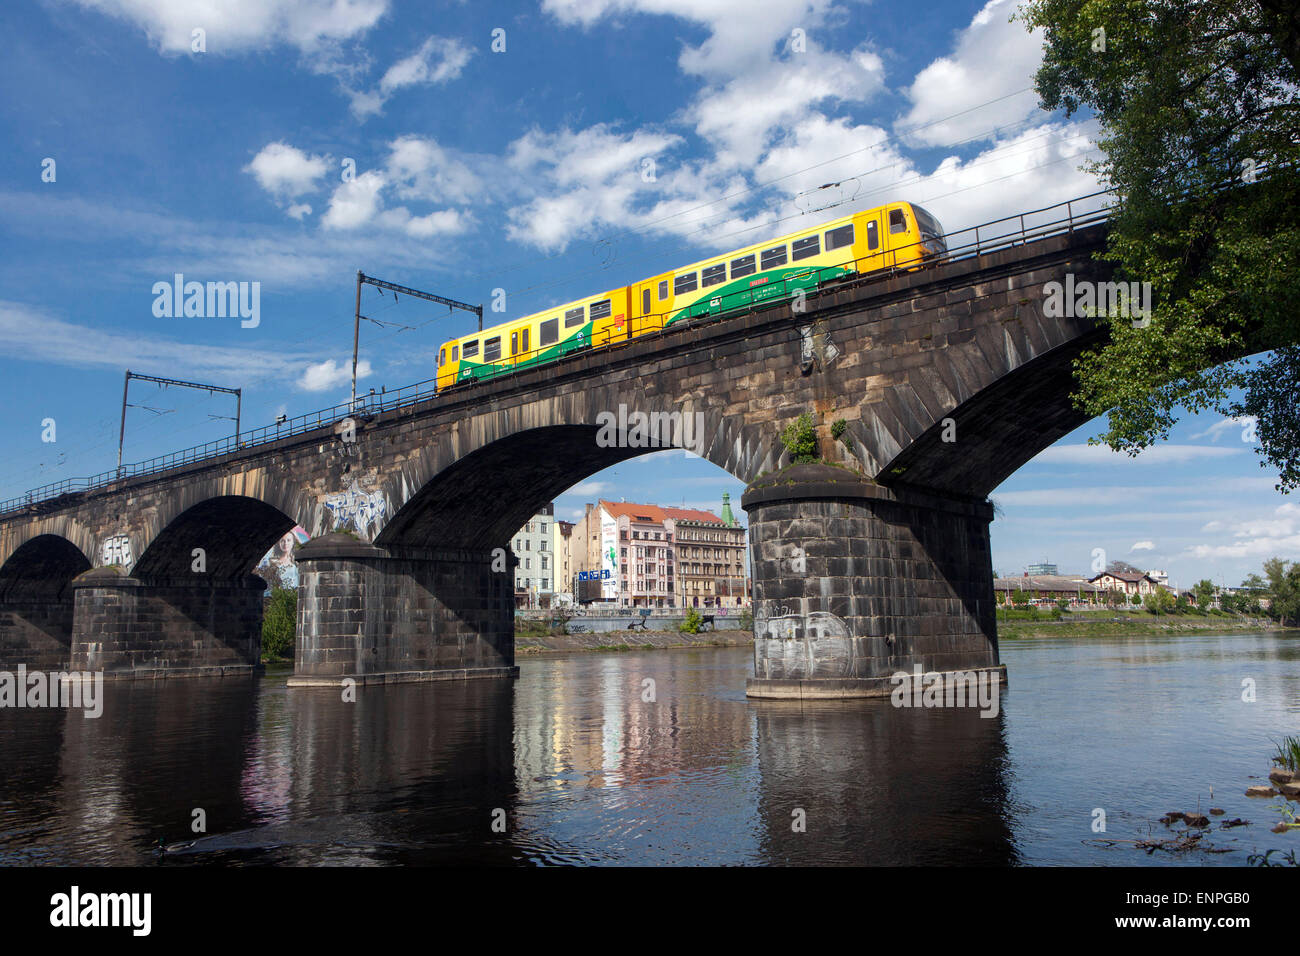 Die negrelli Viadukt ist nach der Charles Brücke, die zweitälteste noch bestehende Brücke über die Moldau in Prag. Tschechische Republik Zug Stockfoto